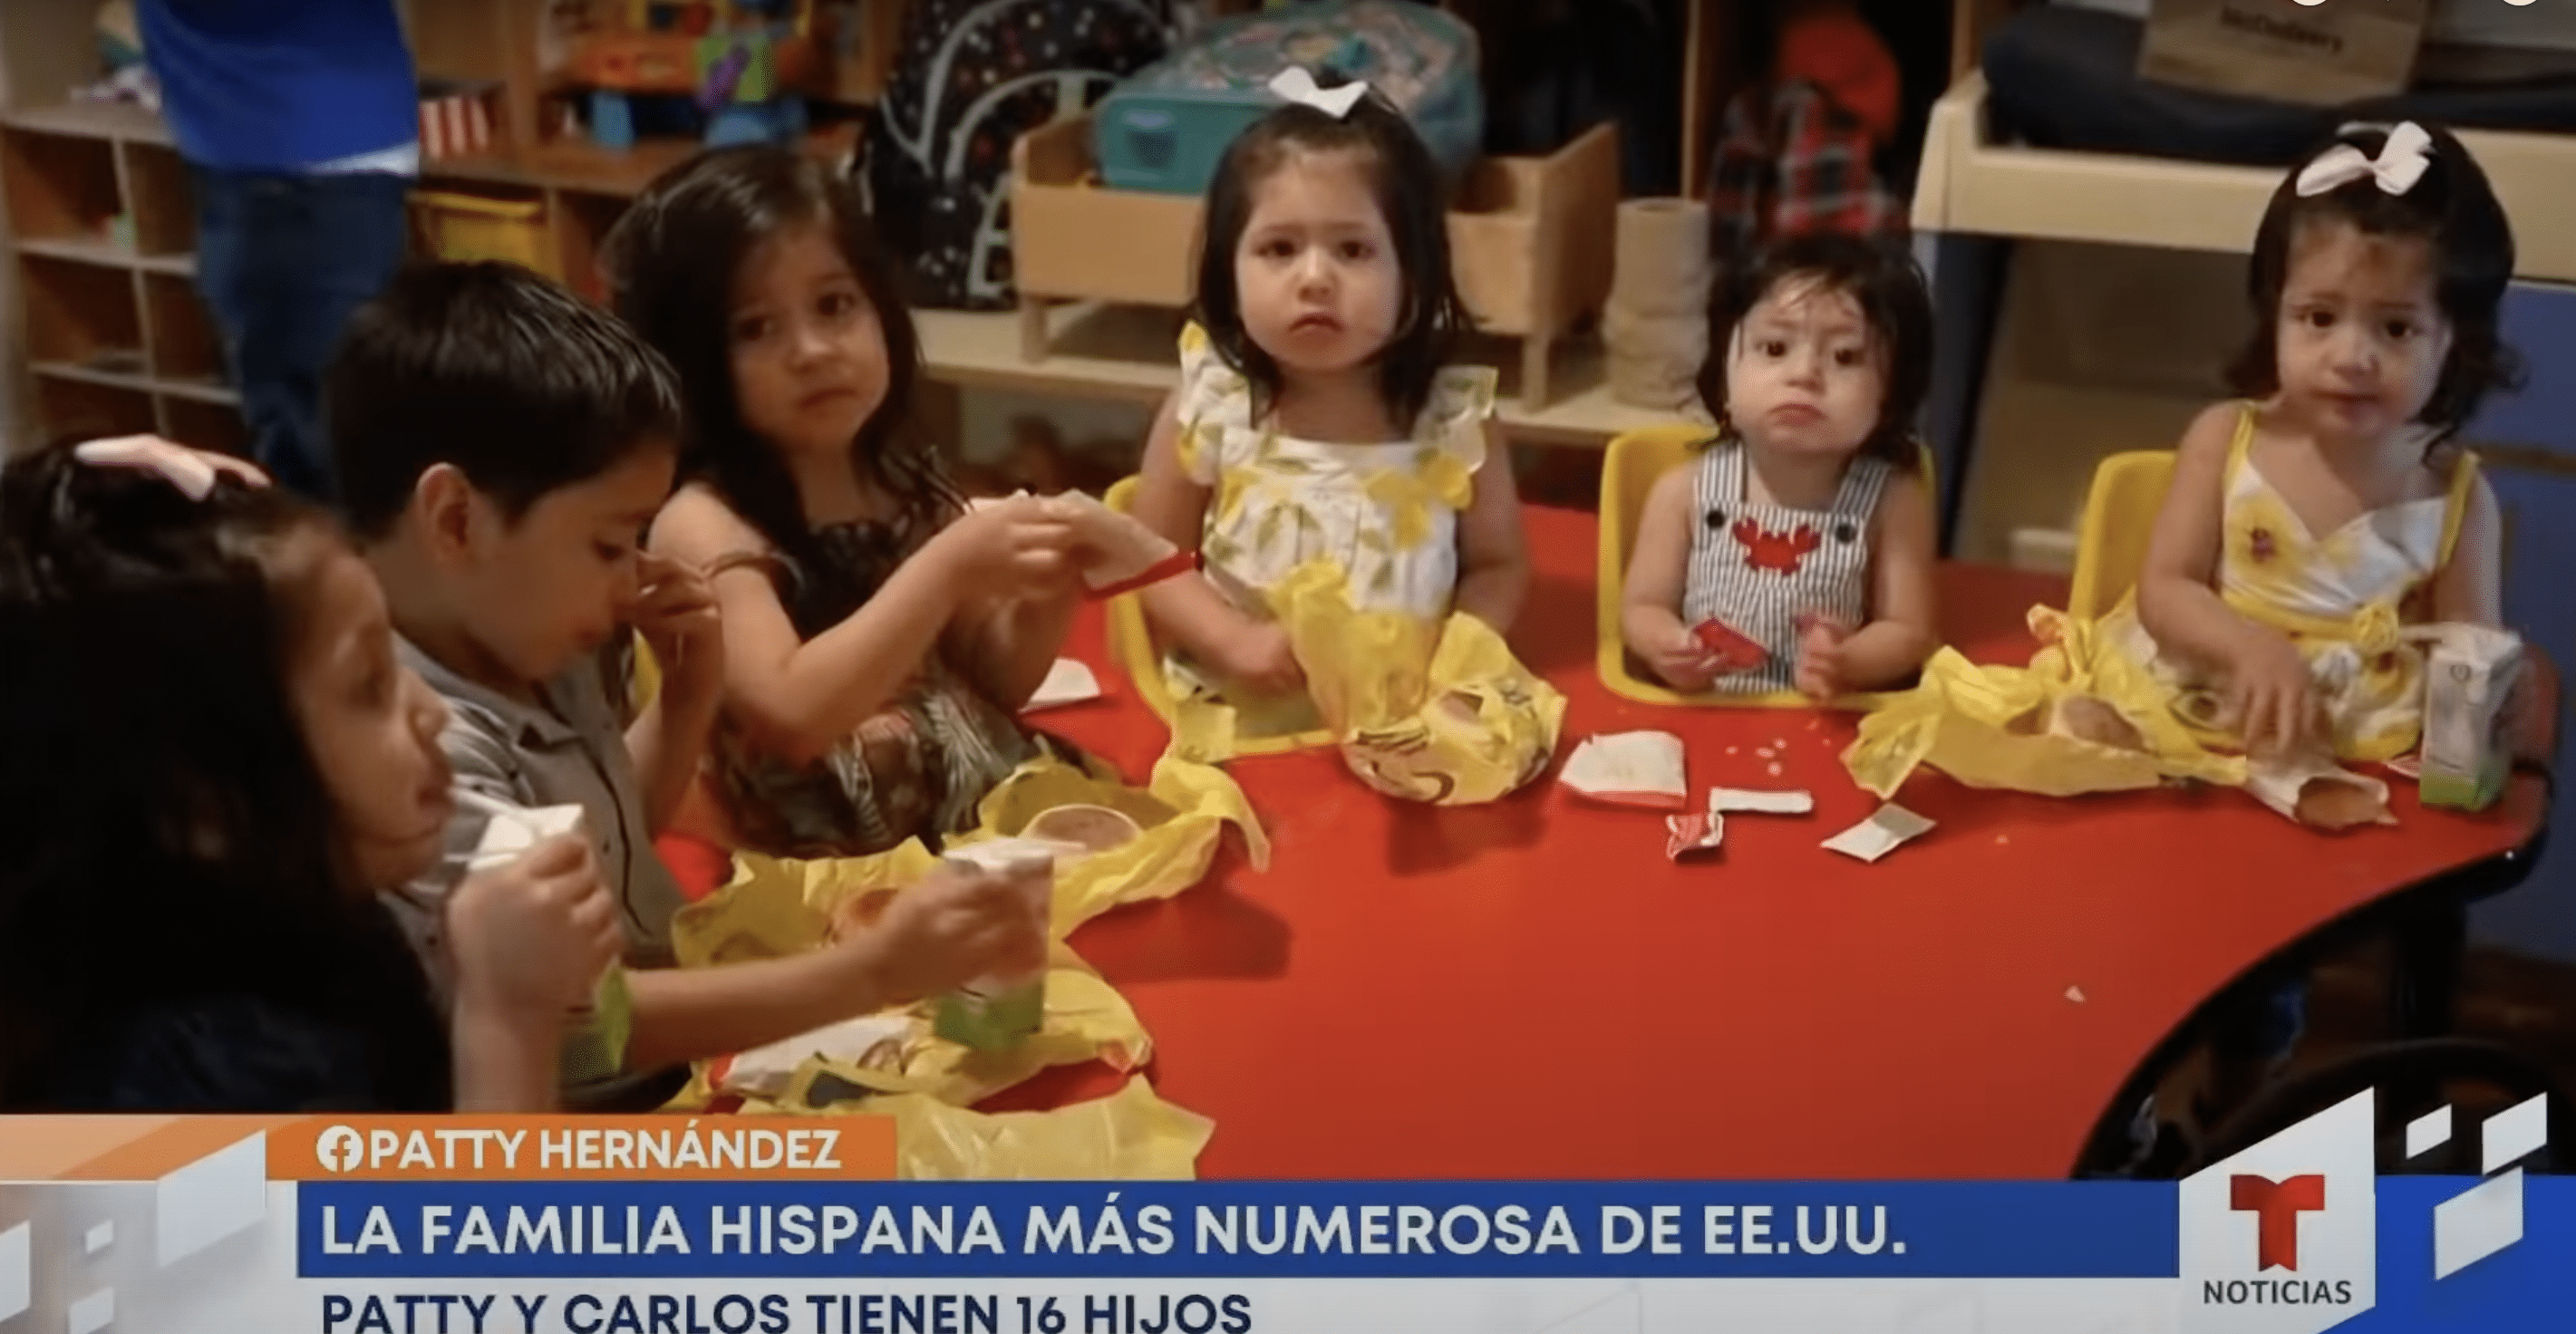 Quelques-uns des enfants Hernandez sont vus en train de manger. | Source : YouTube.com/hoy Día